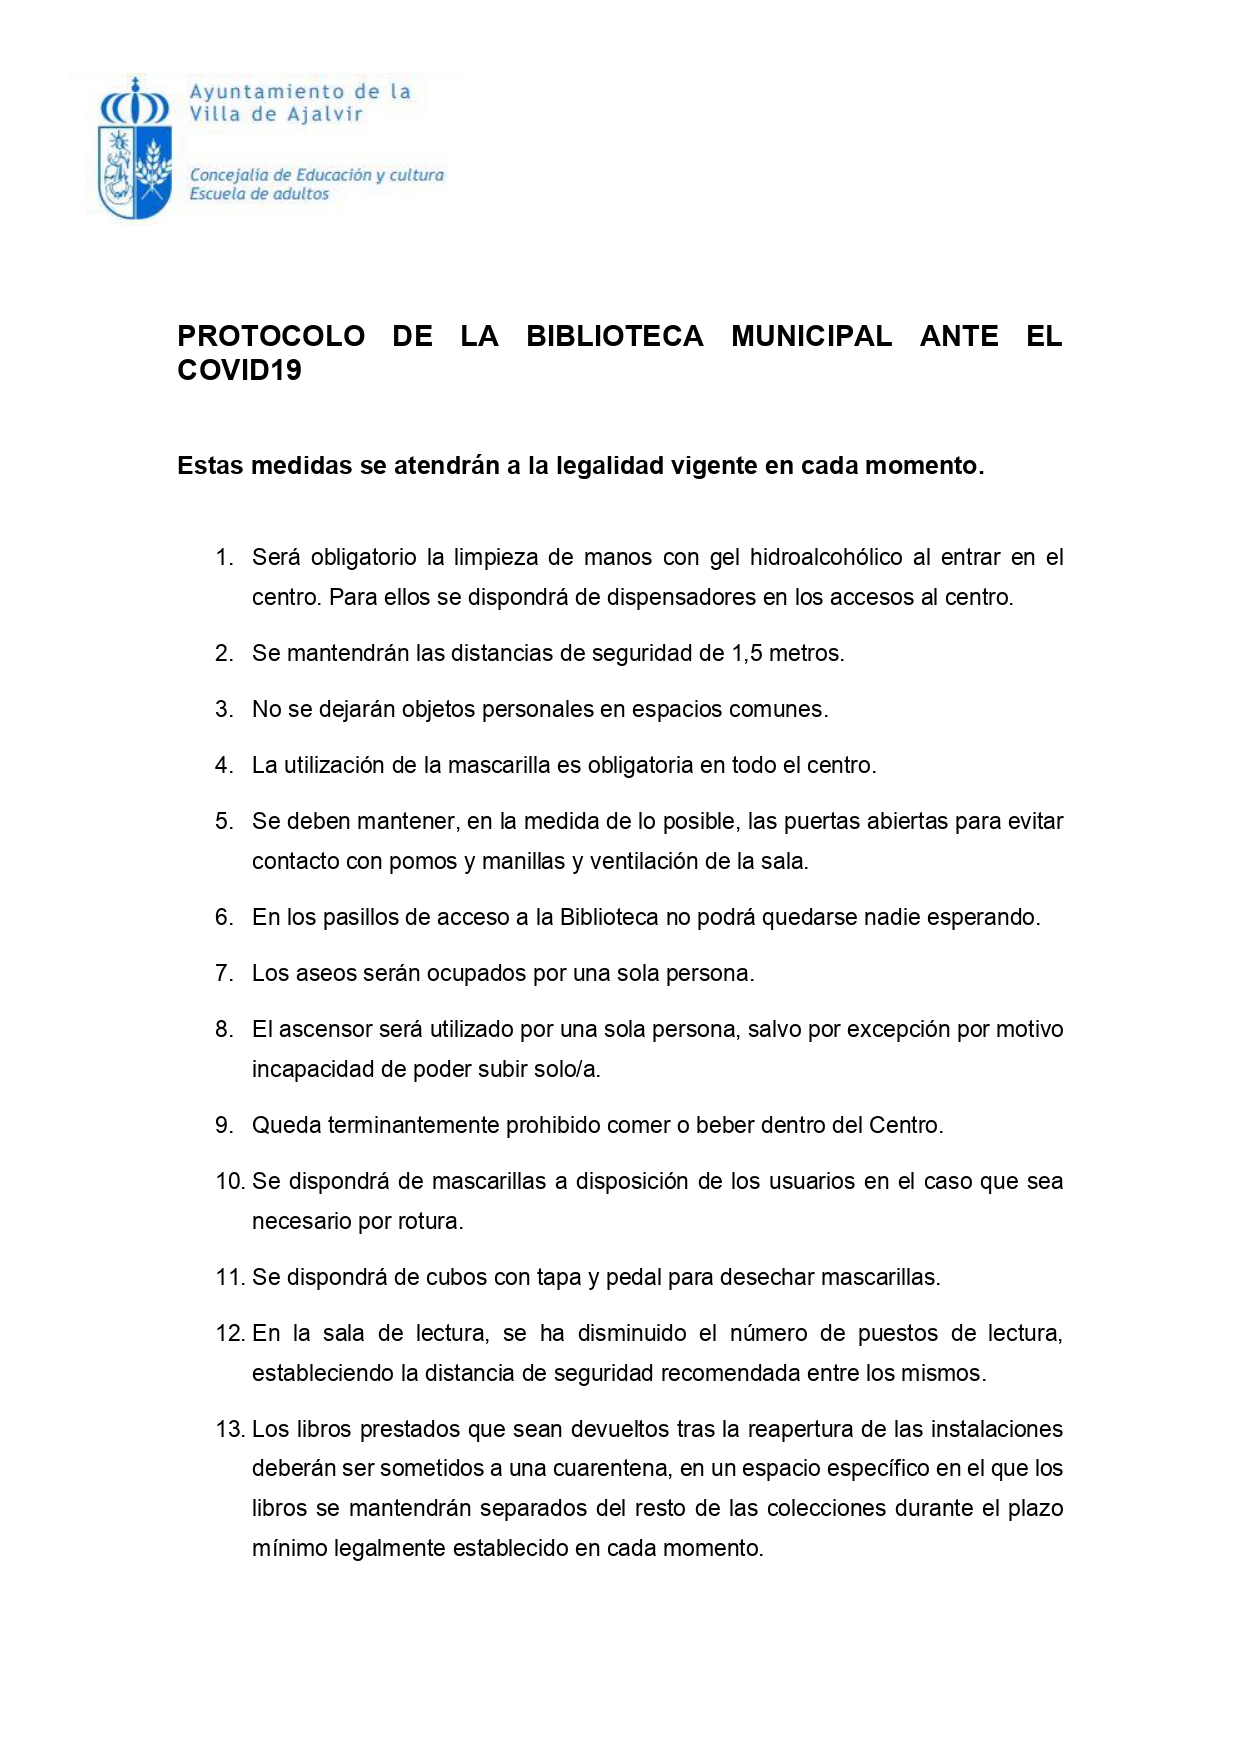 PROTOCOLO DE LA BIBLIOTECA MUNICIPAL ANTE EL COVID19 page 0001